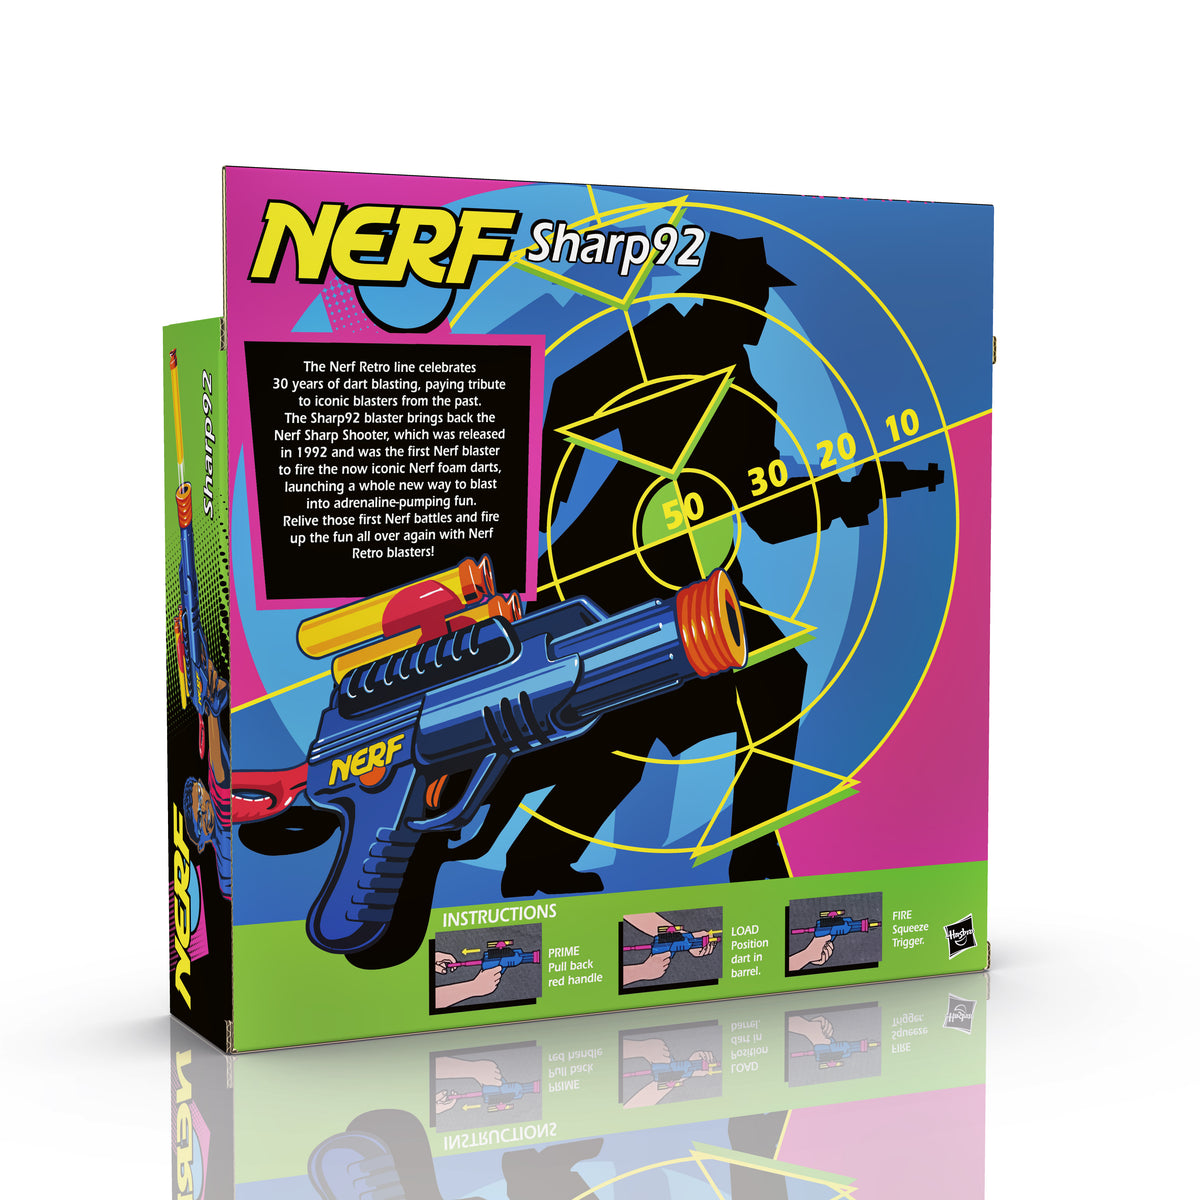 Nerf Sharp92 Retro Blaster